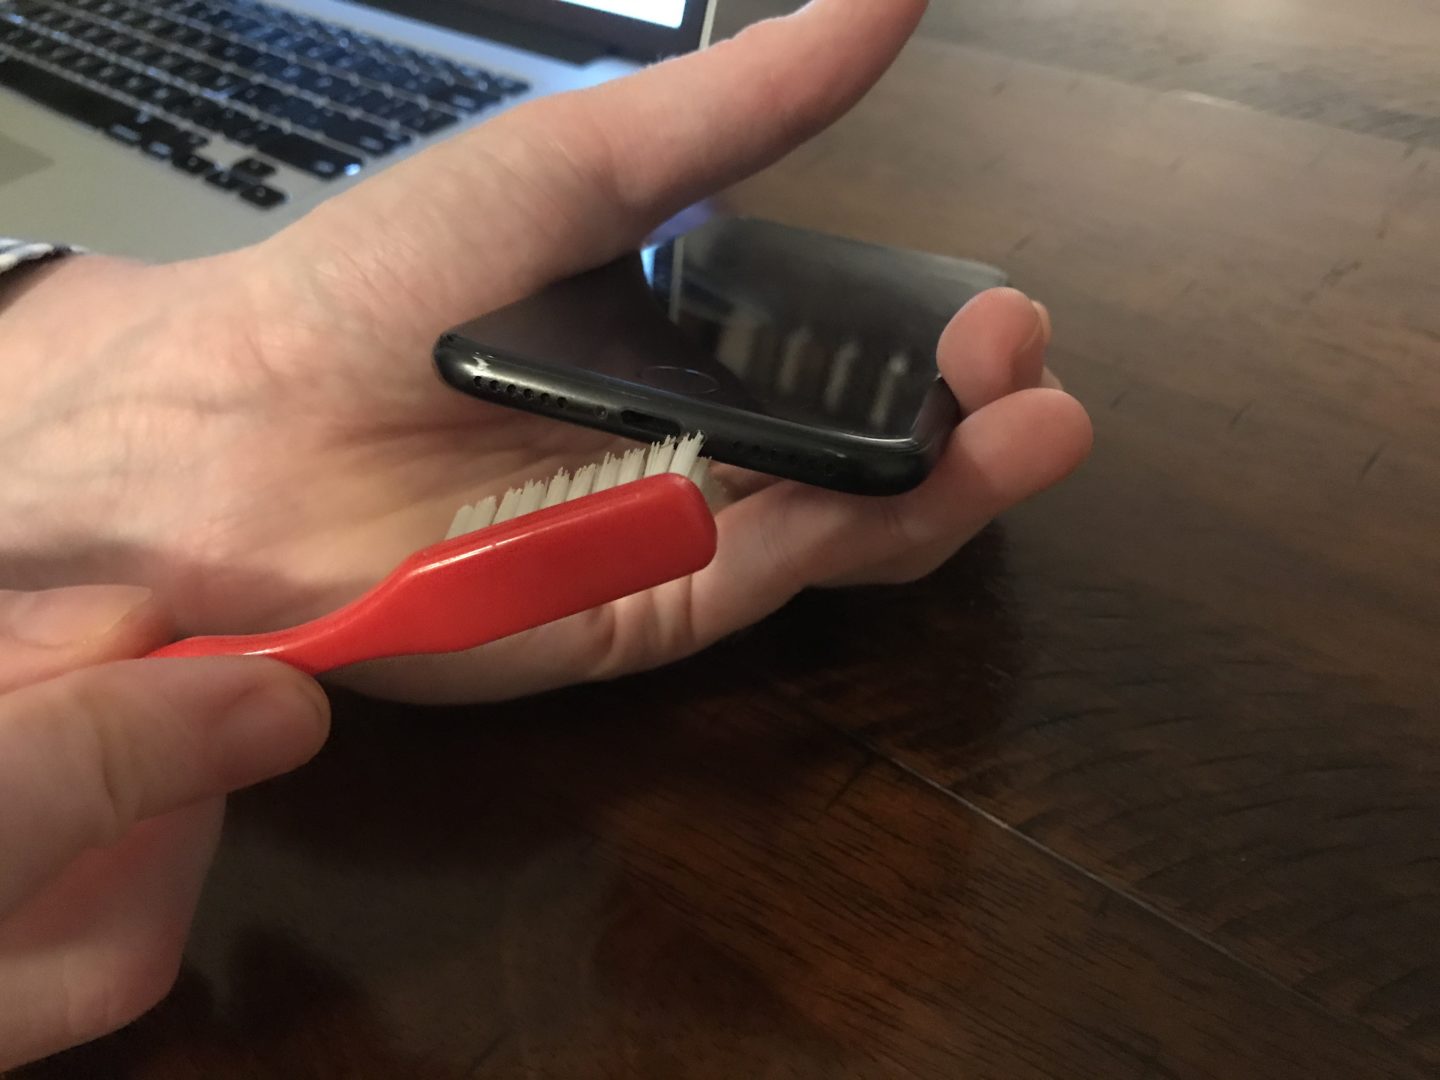 Utilisez une brosse à dents pour brosser le port Lightning de l'iPhone